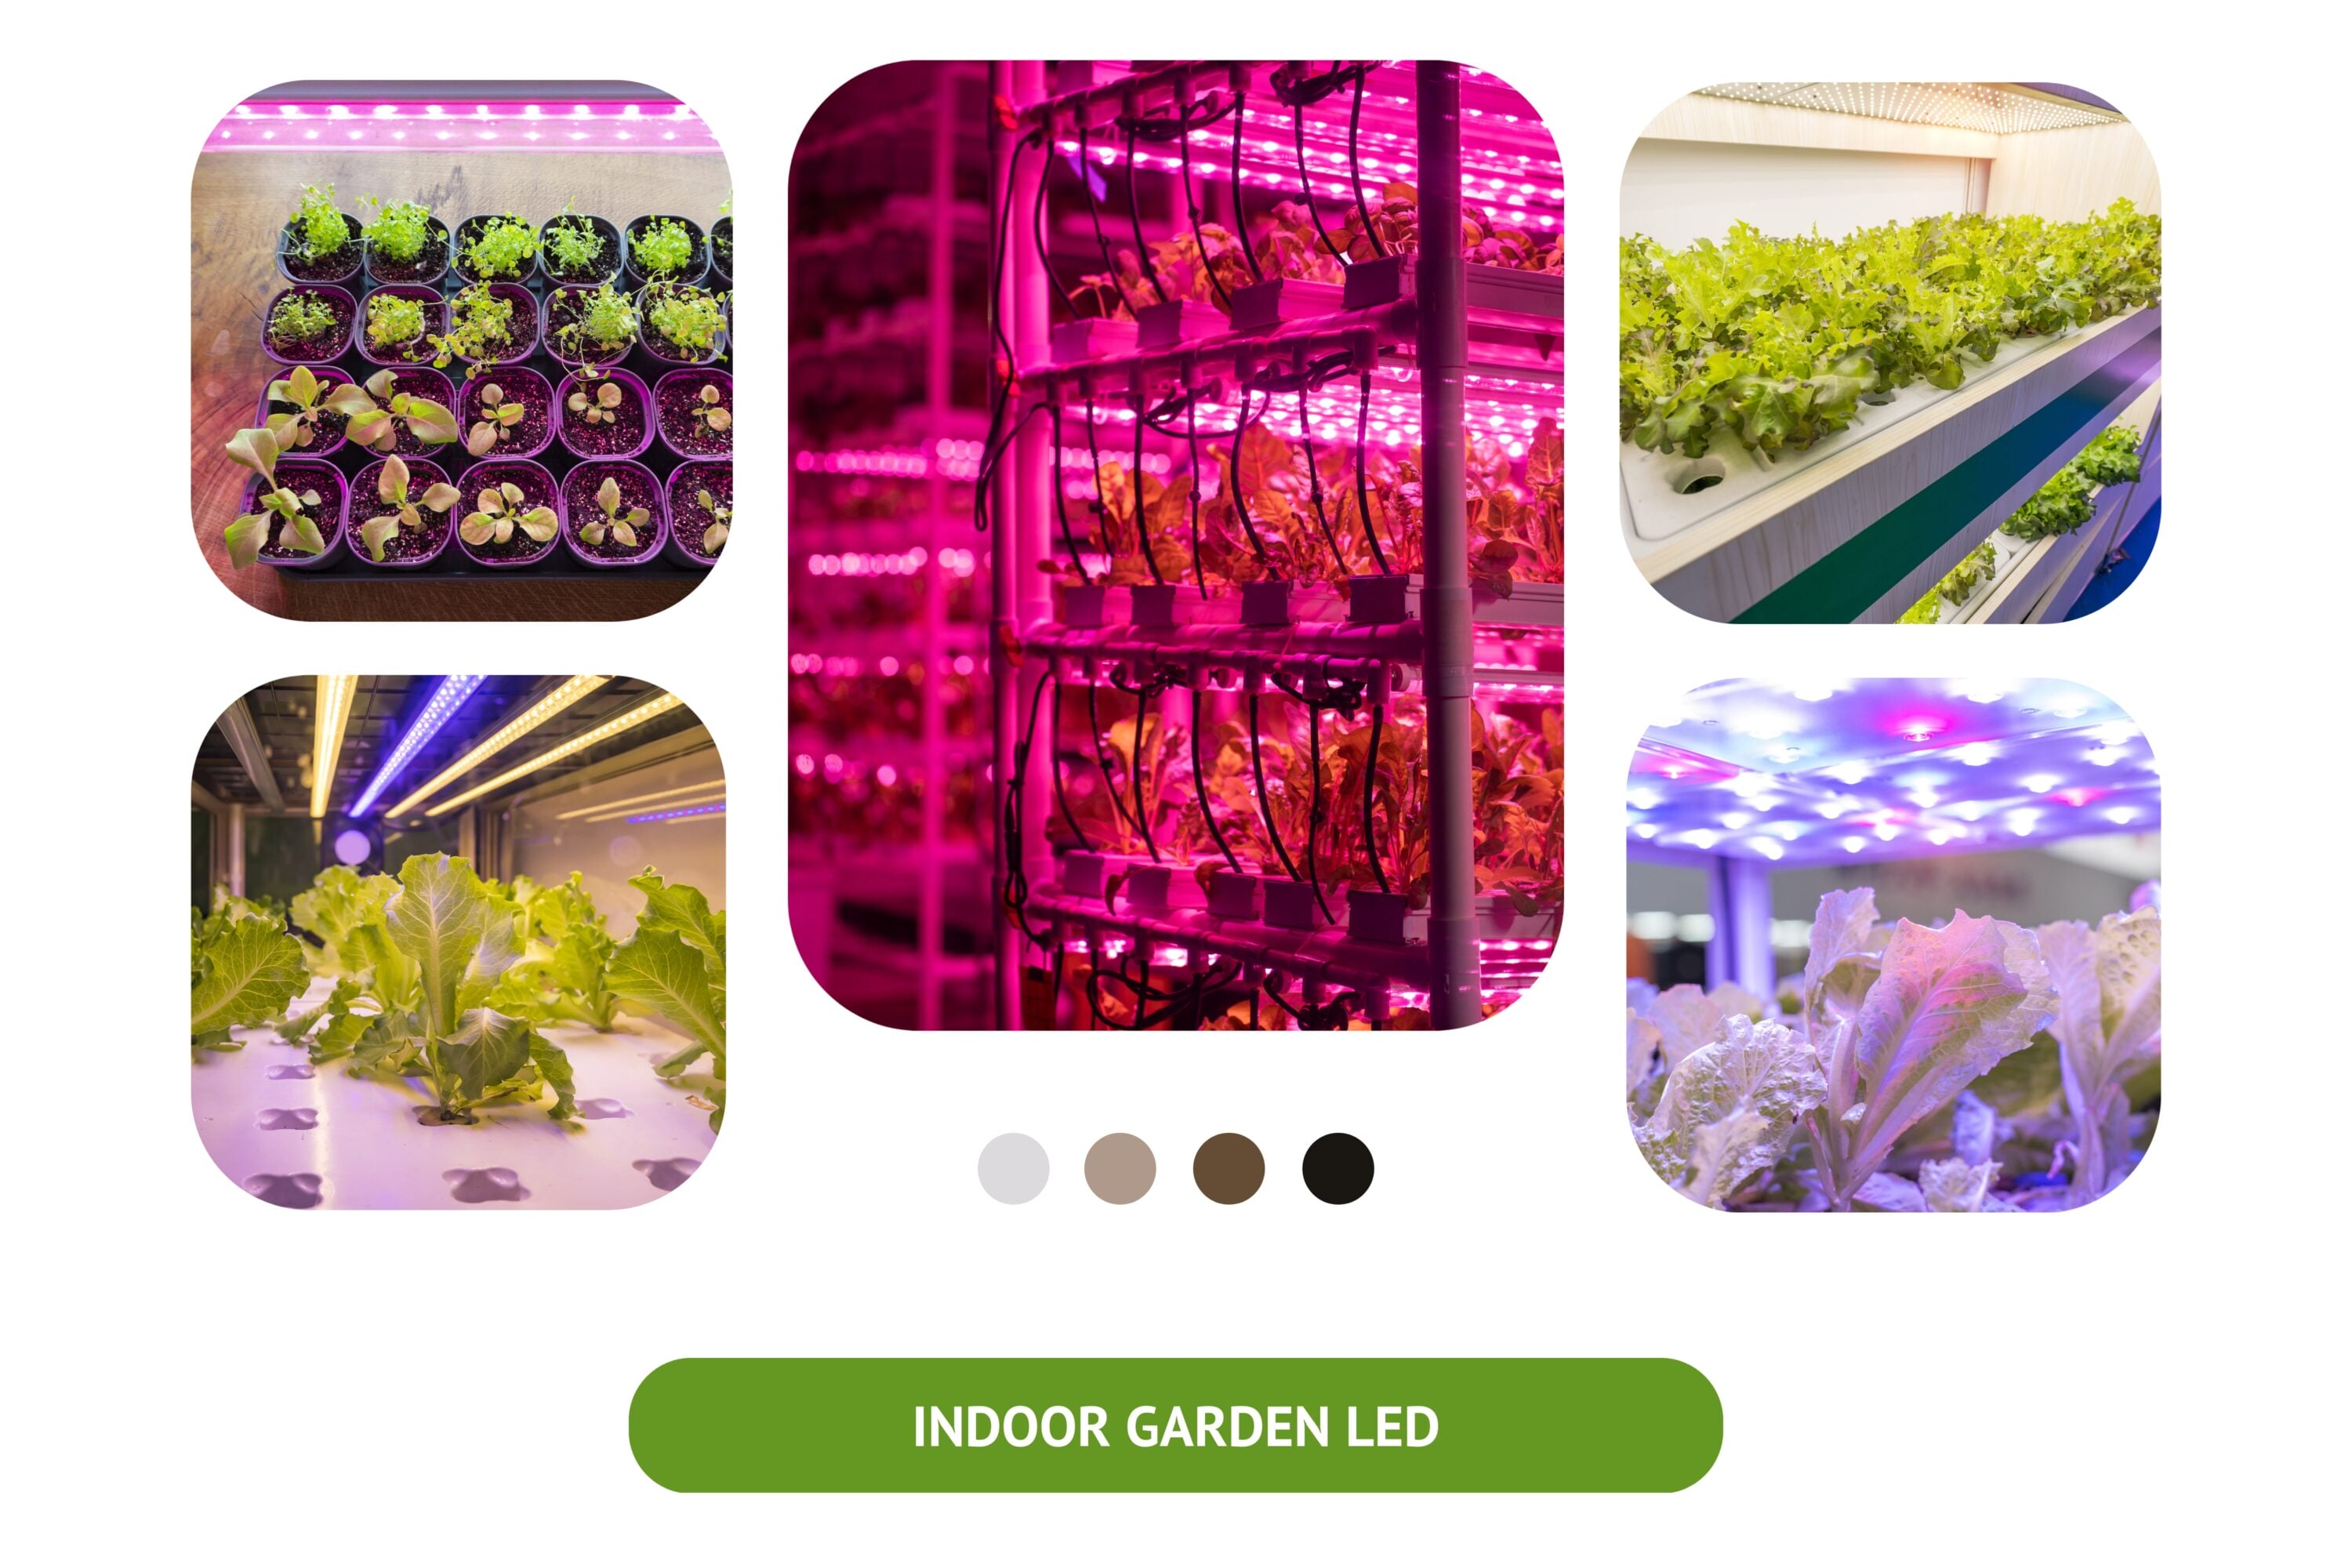 Indoor Plants and Spectrum of Light